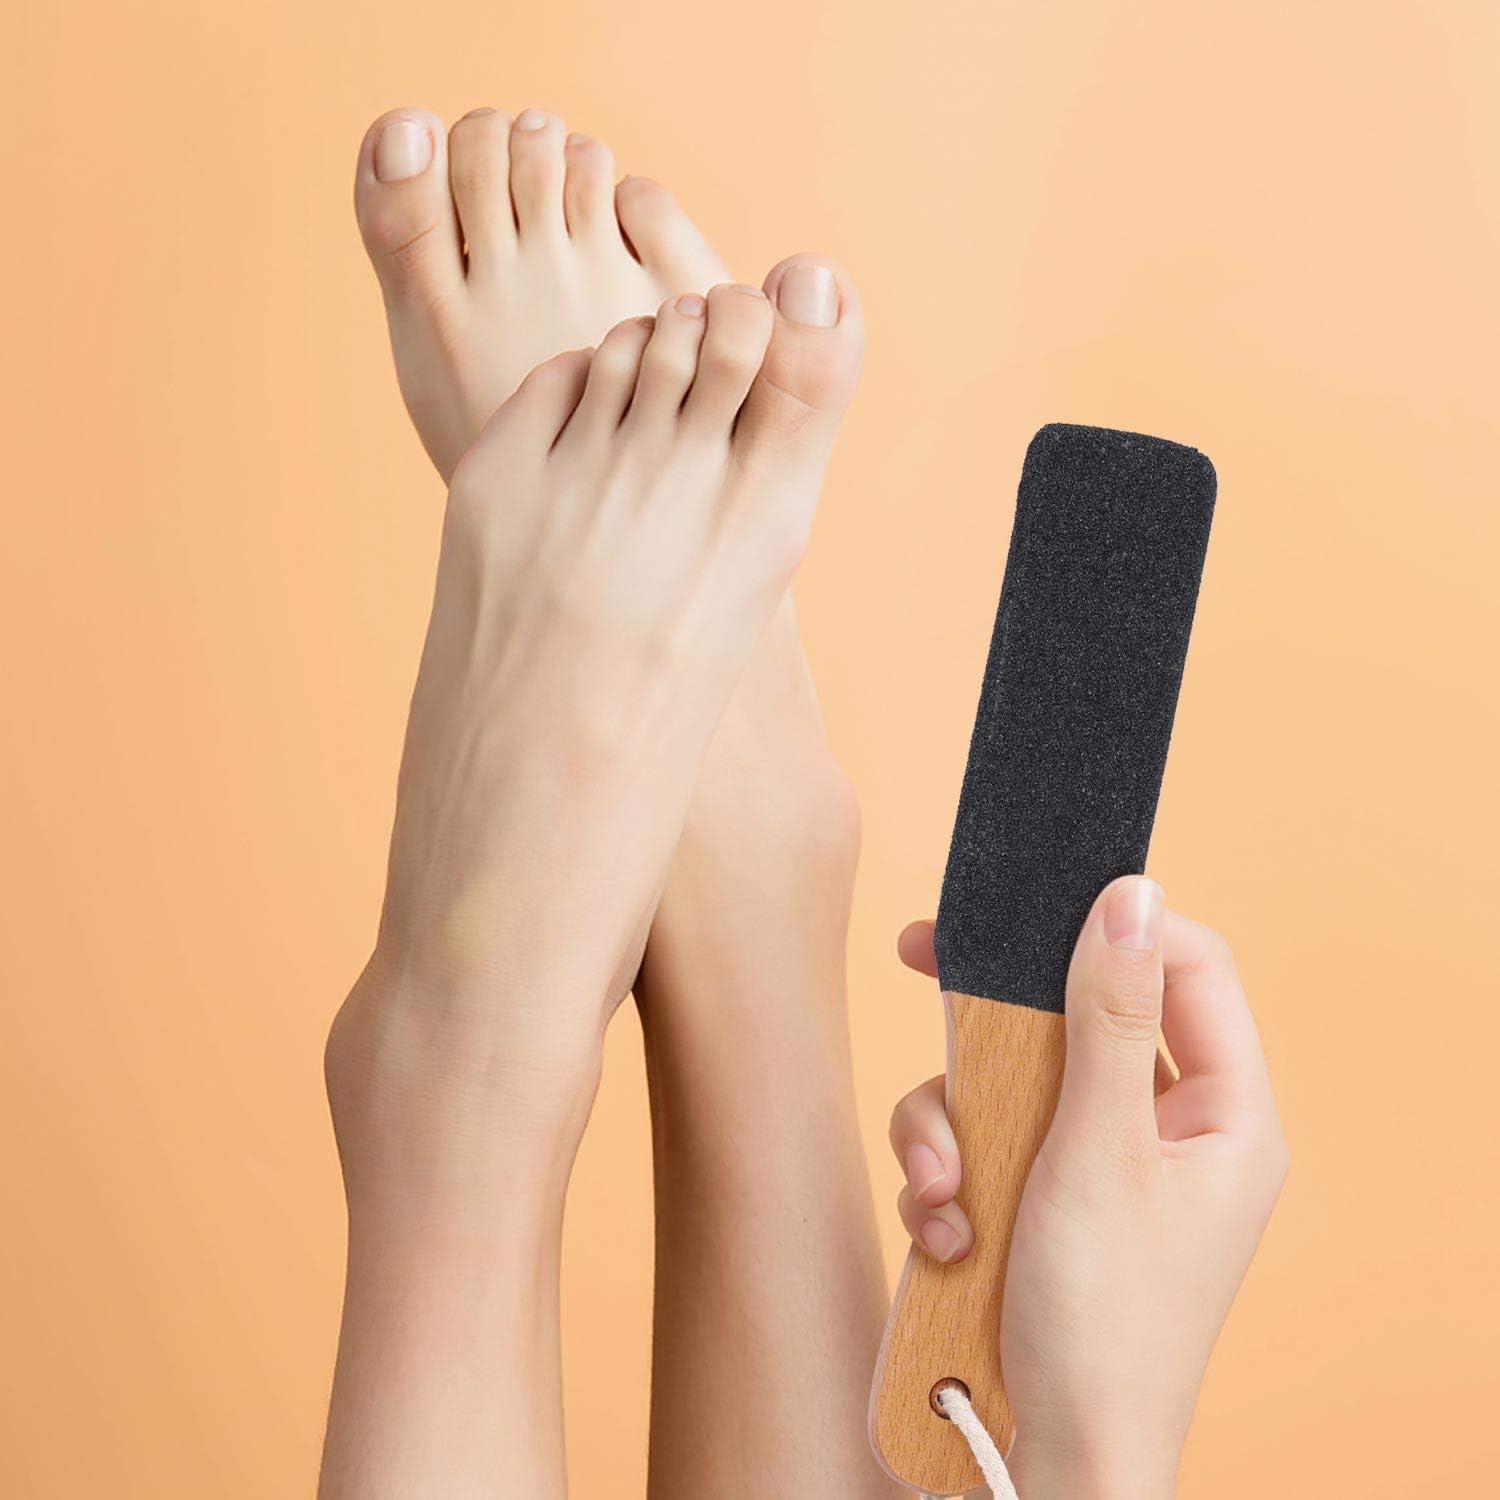 Foot Scrubber For Dead Skin Foot File Callus Remover Wooden Pedi